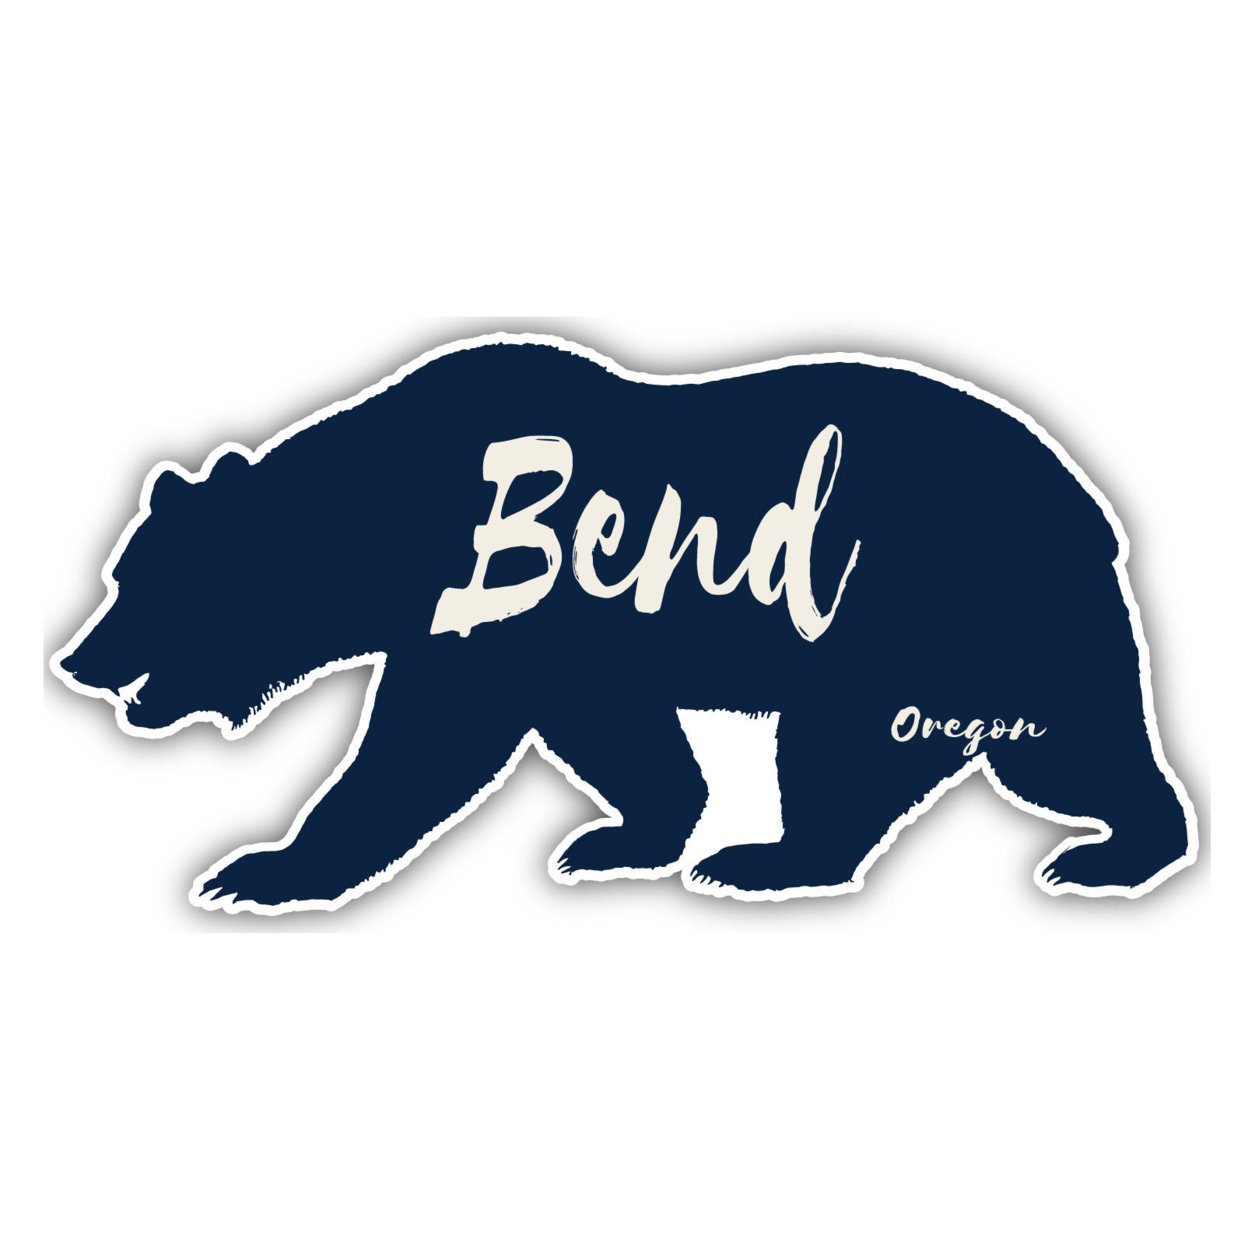 Bend Oregon Souvenir Decorative Stickers (Choose Theme And Size) - Single Unit, 12-Inch, Tent